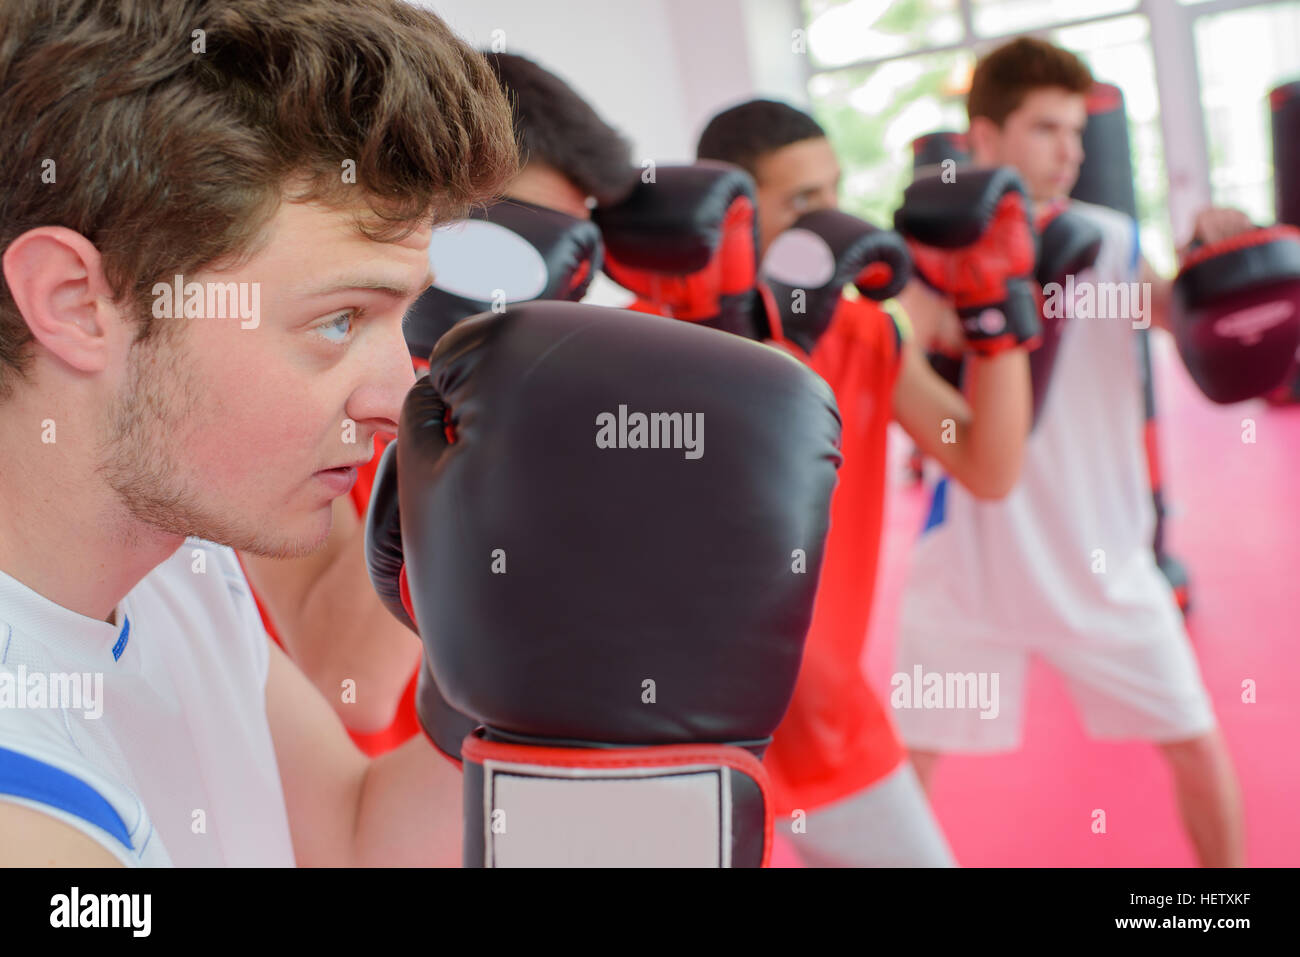 Résultat de recherche d'images pour "young boxing competitors"